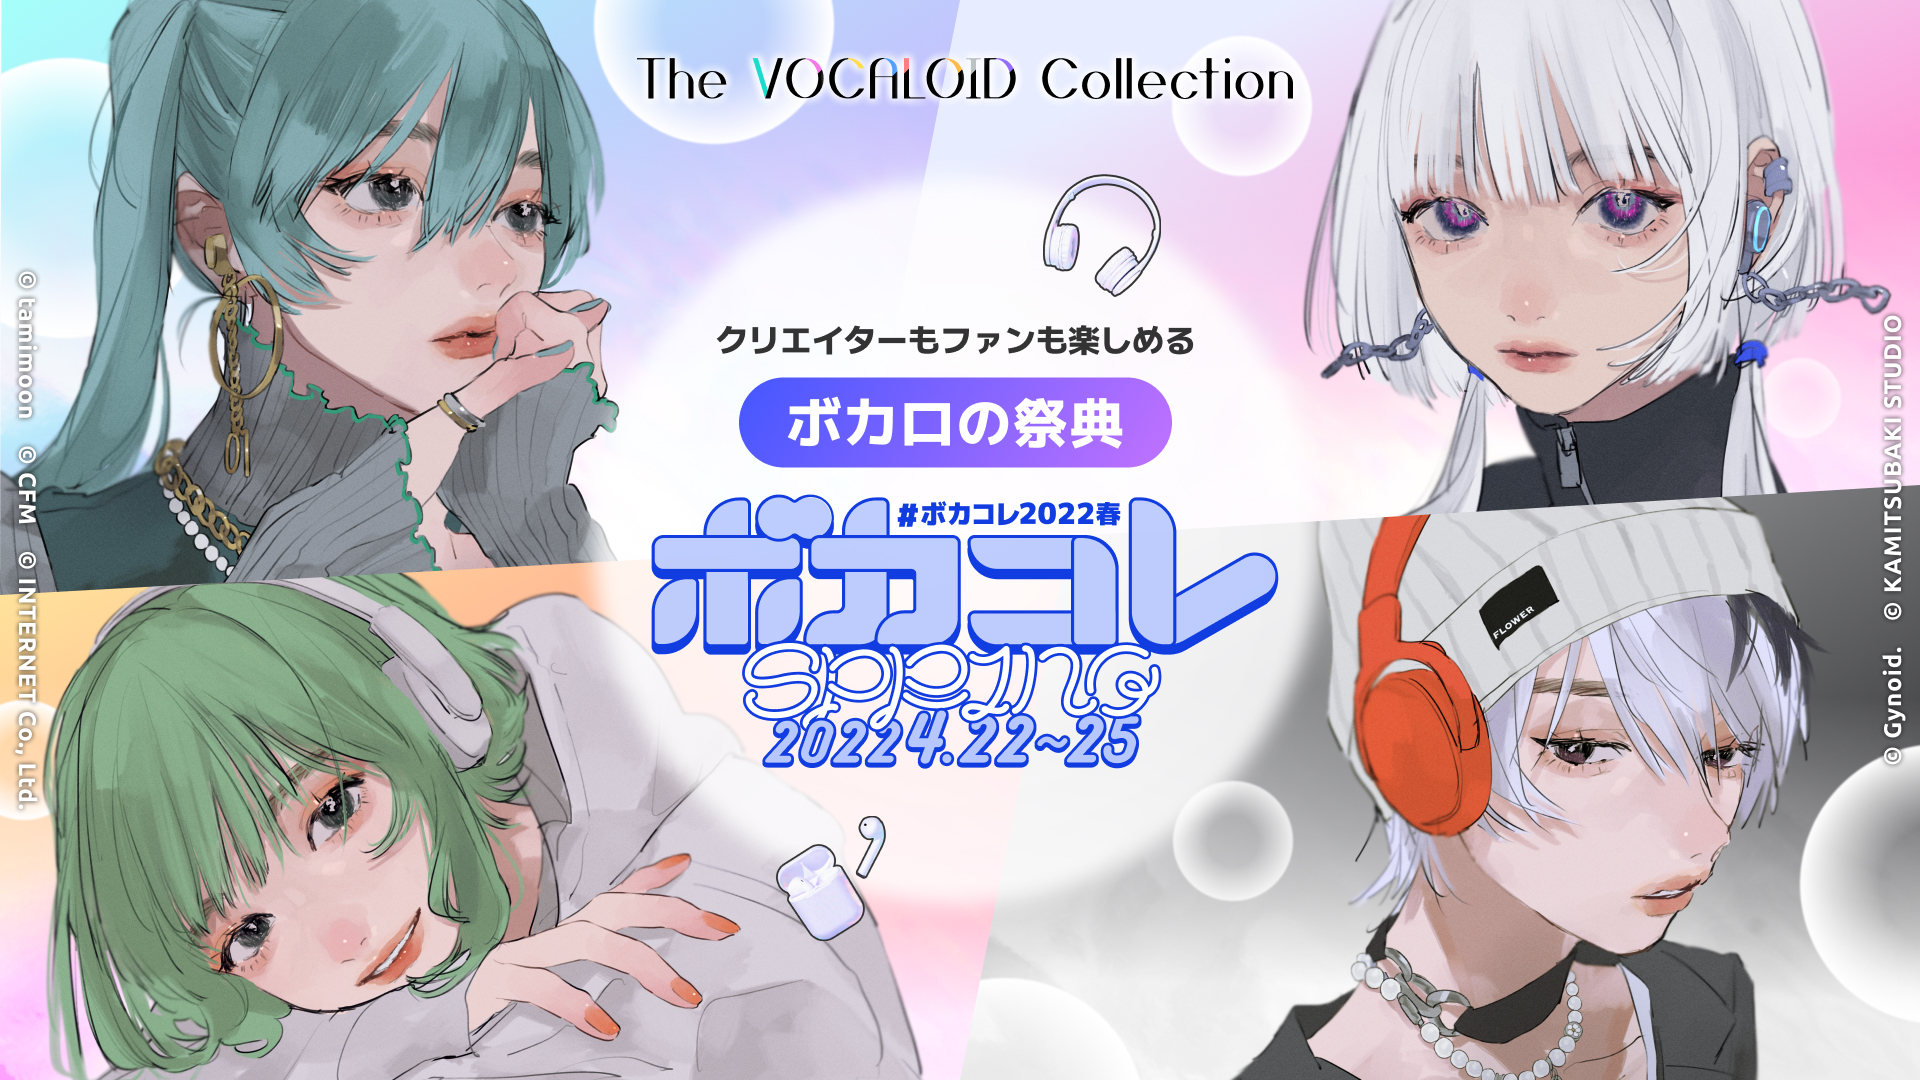 ネット最大のボカロイベント The Vocaloid Collection 22 Spring 追加発表 株式会社ドワンゴ 広報部のプレスリリース